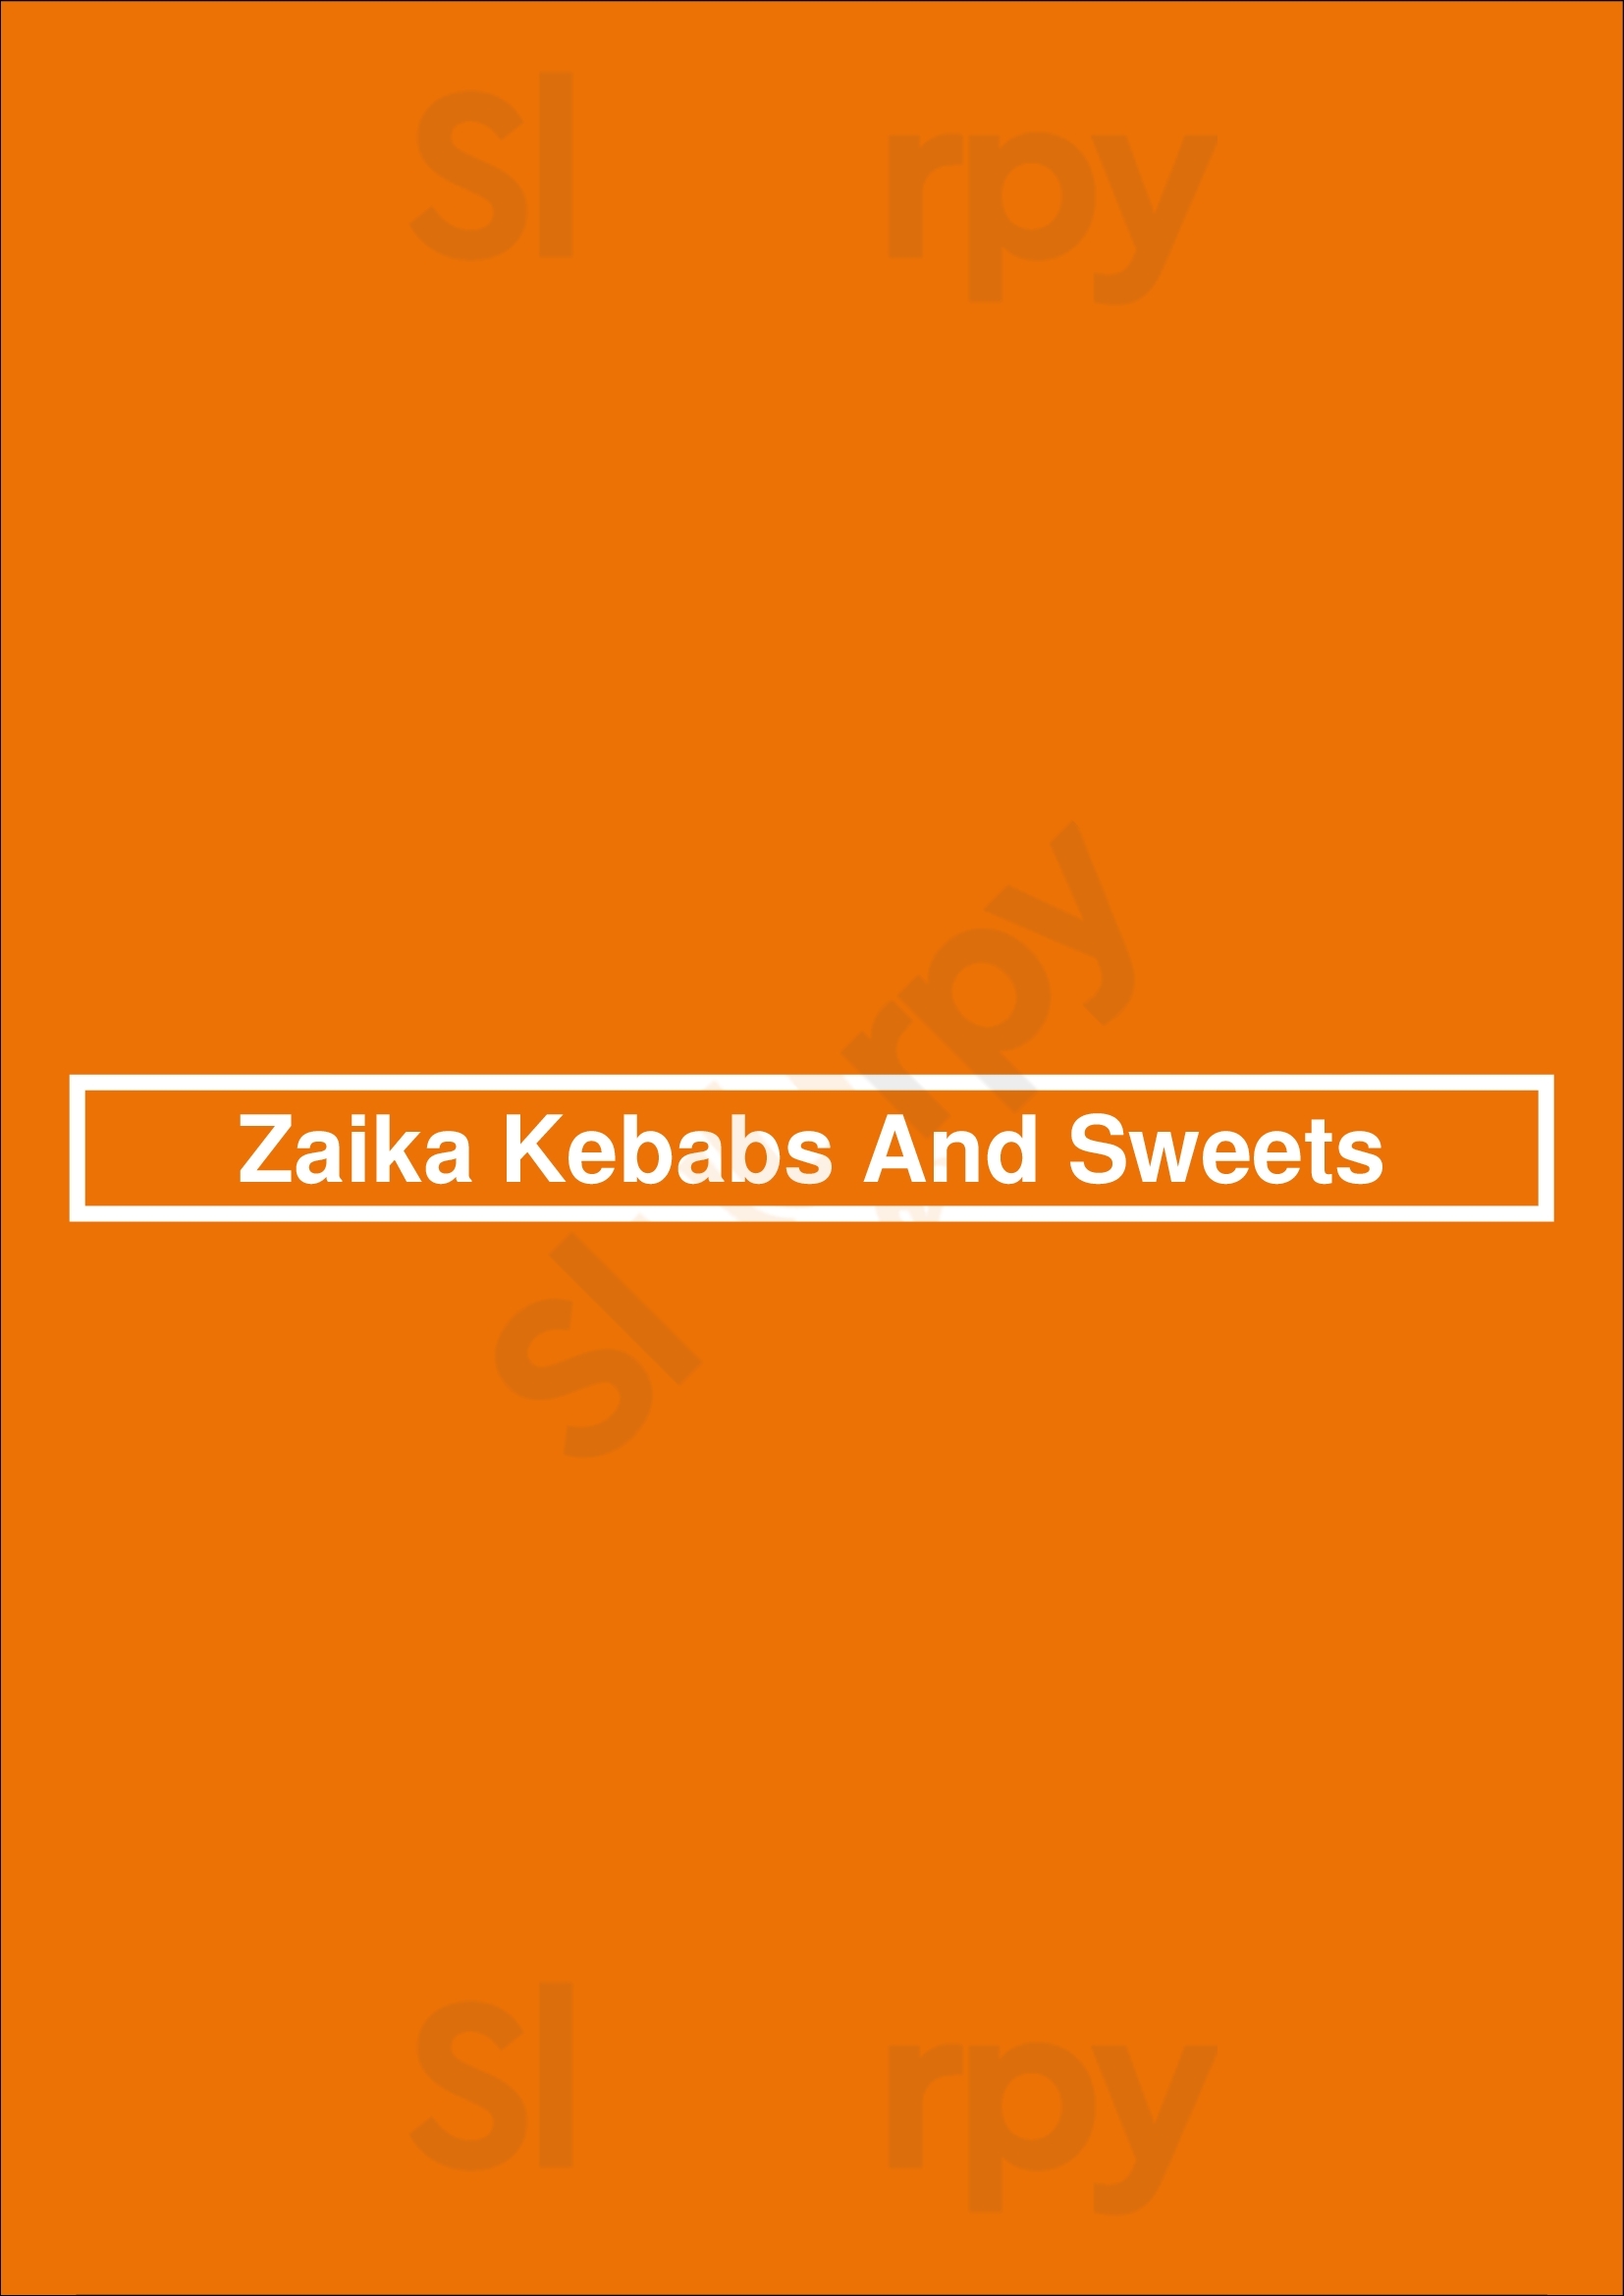 Zaika Kebabs And Sweets Sheffield Menu - 1